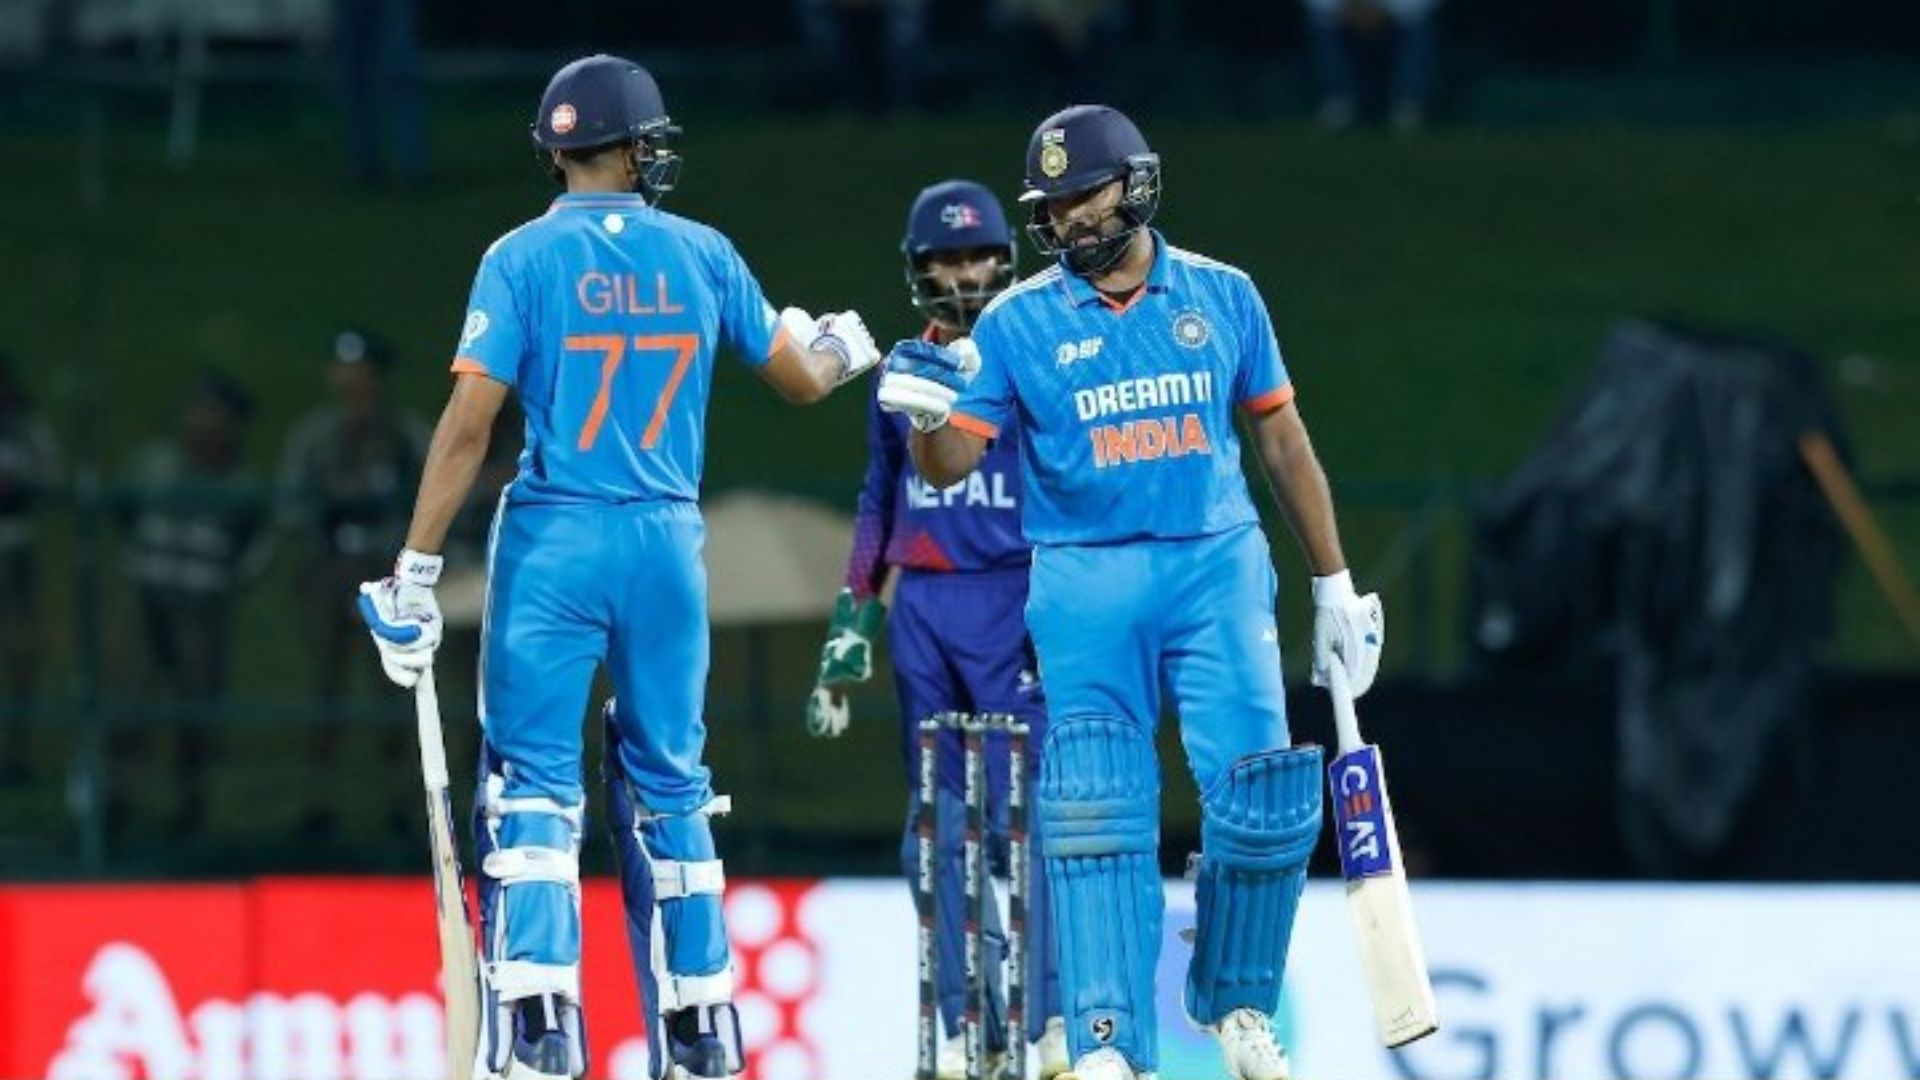 IND vs NEP: रोहित शर्मा और शुभमन गिल की शानदार पारी, 10 विकेट हारी नेपाल